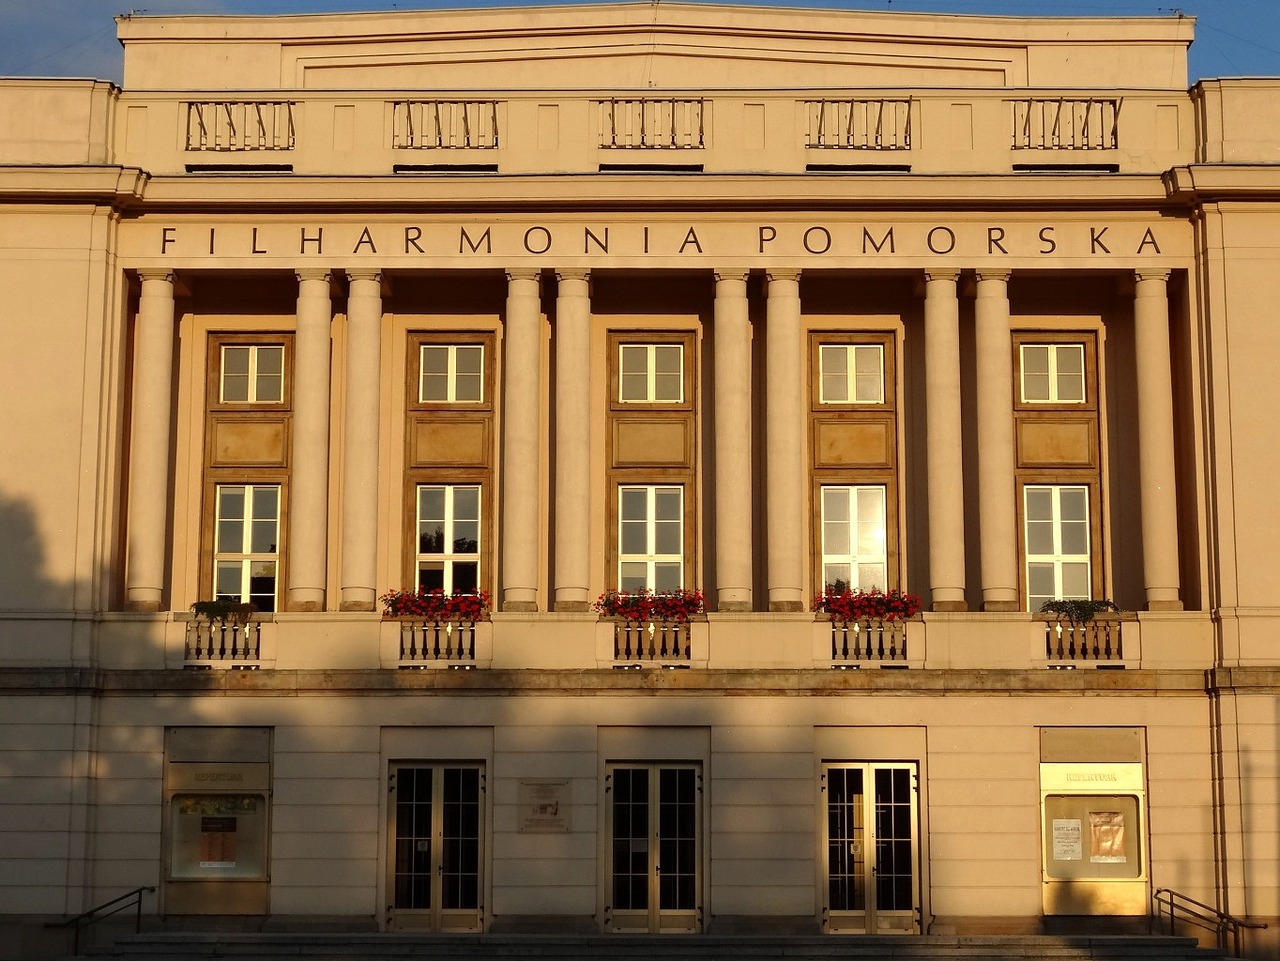 Budynek Filharmonii Pomorskiej w Bydgoszczy jako miejsca kultury